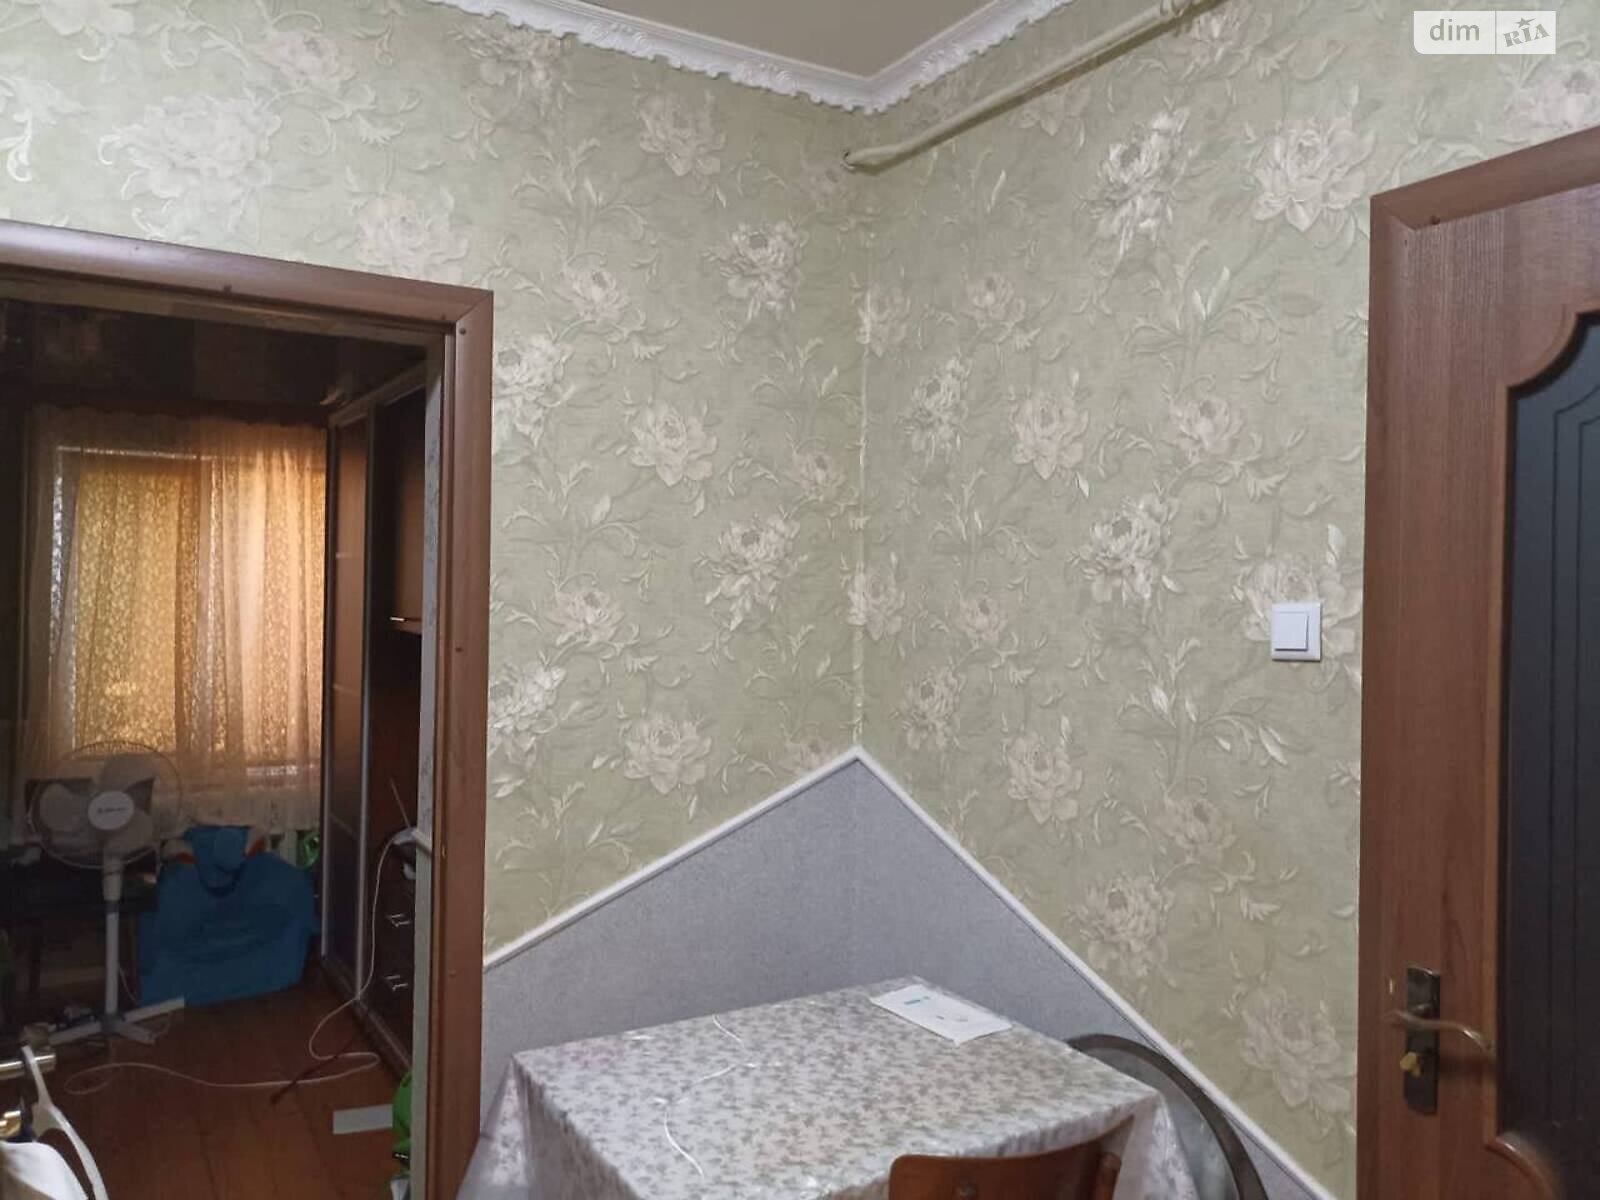 Продажа части дома в Ужгороде, улица Полонинская, район Пьяный базар, 2 комнаты фото 1